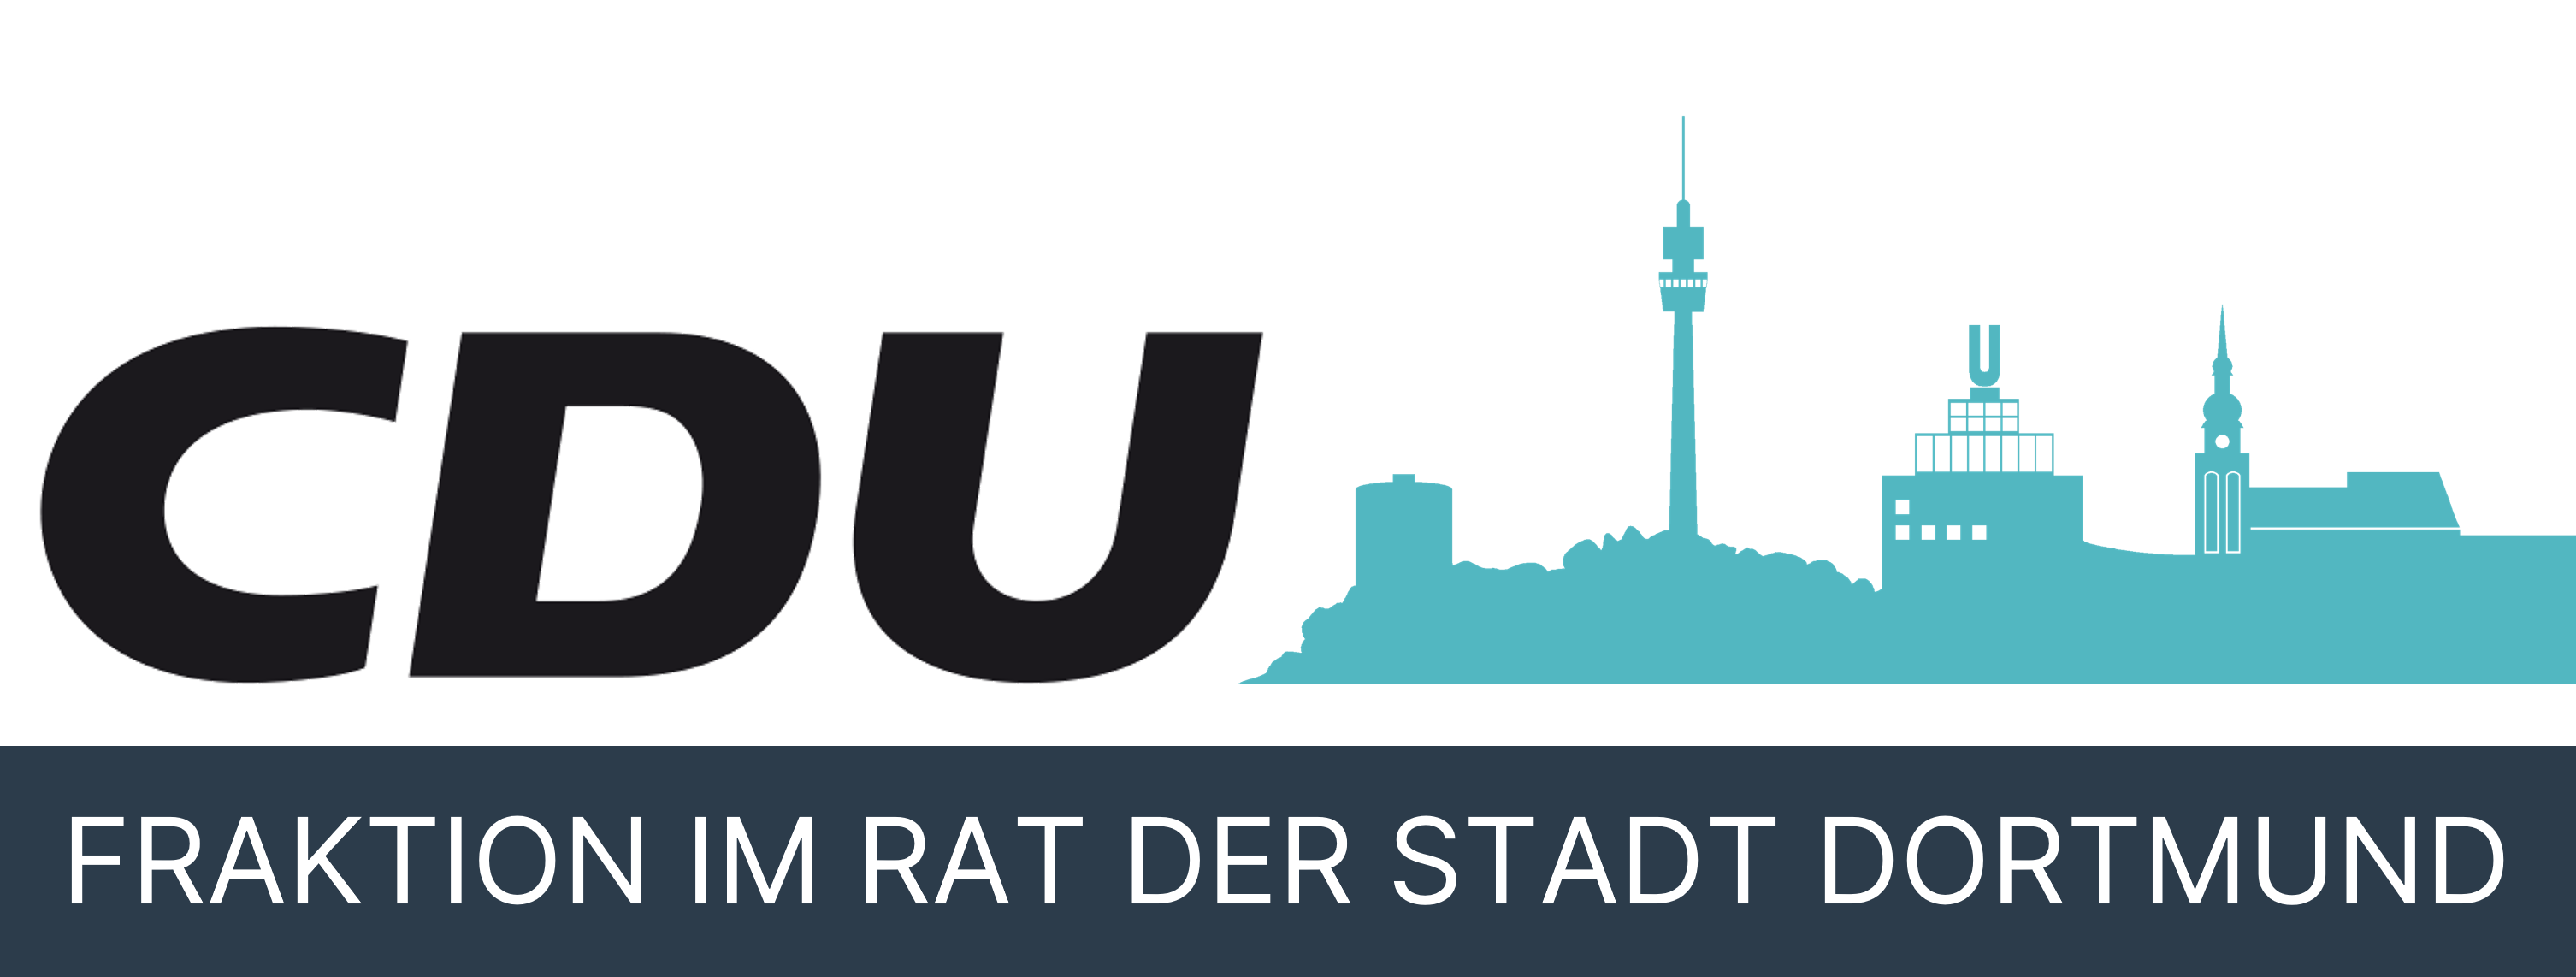 CDU-Fraktion Dortmund